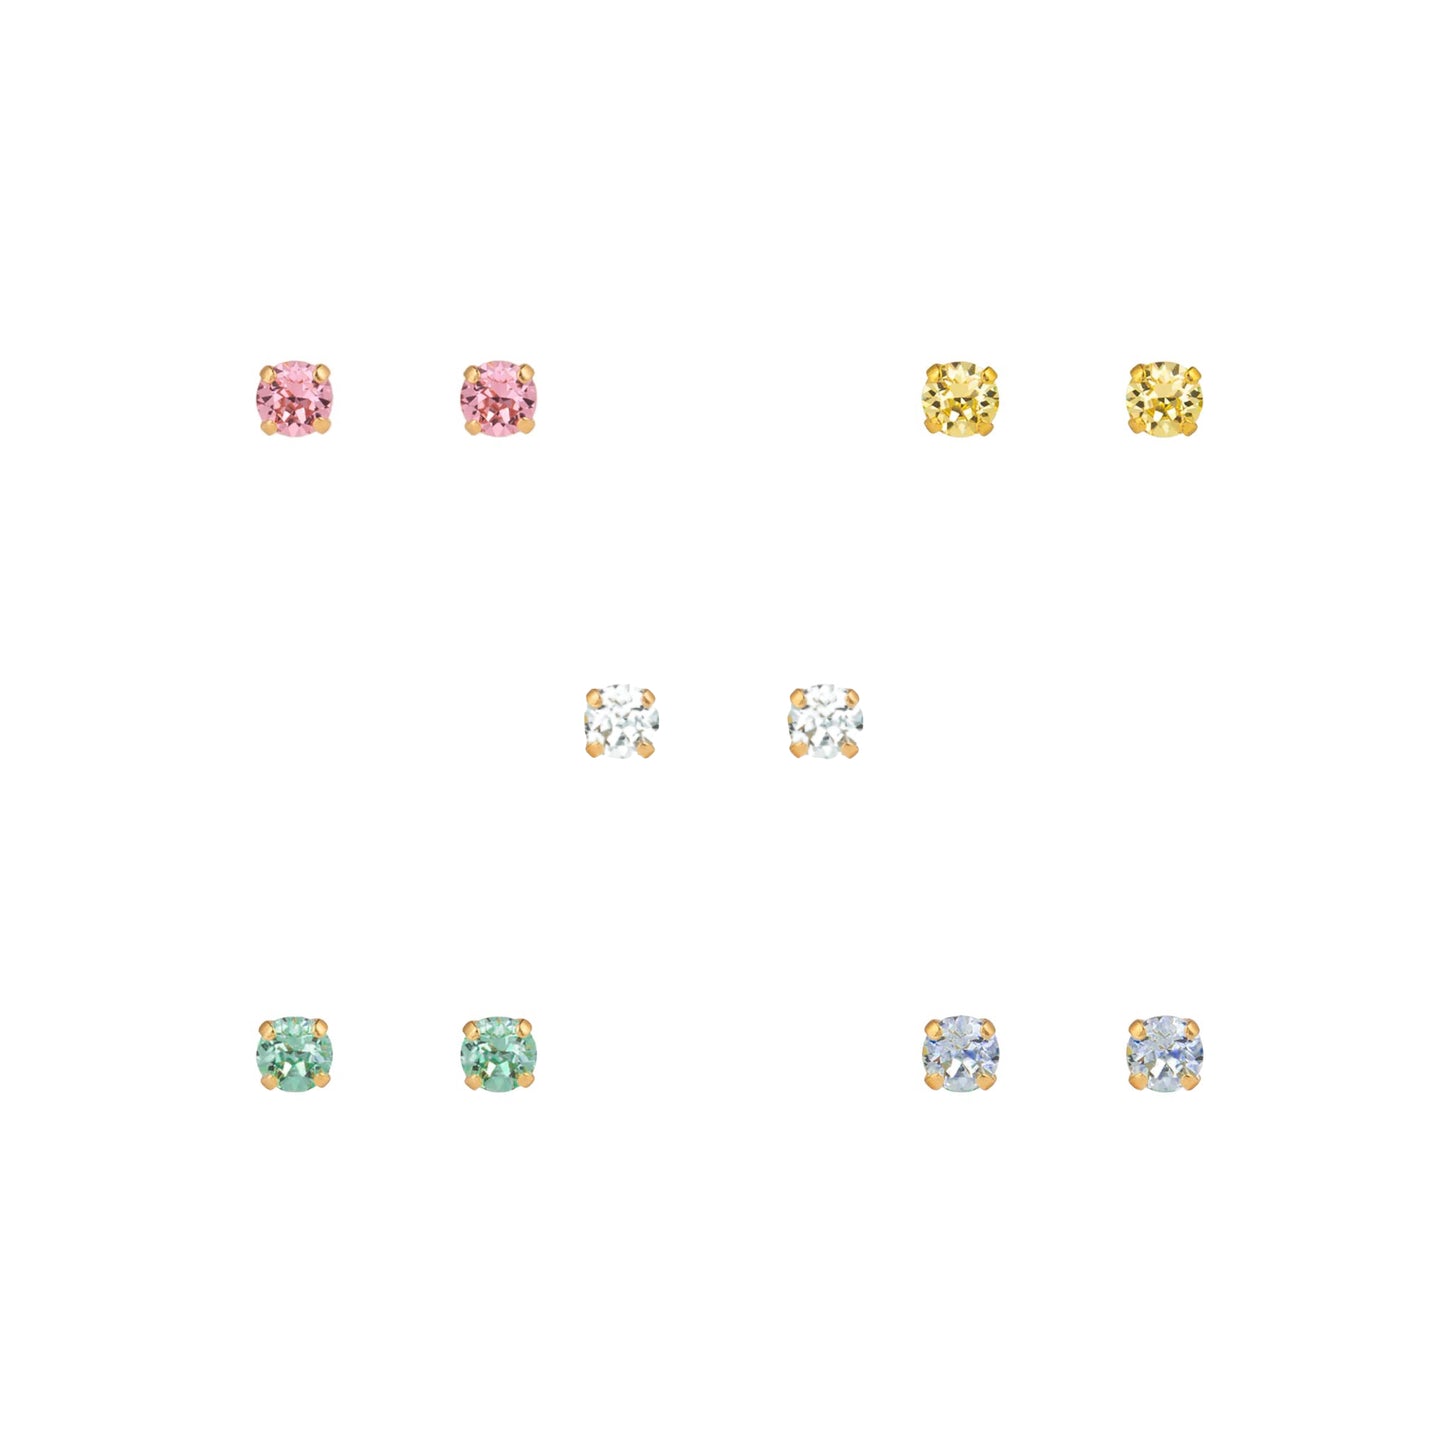 Rainbow Stud Earrings - Set of 5 pairs